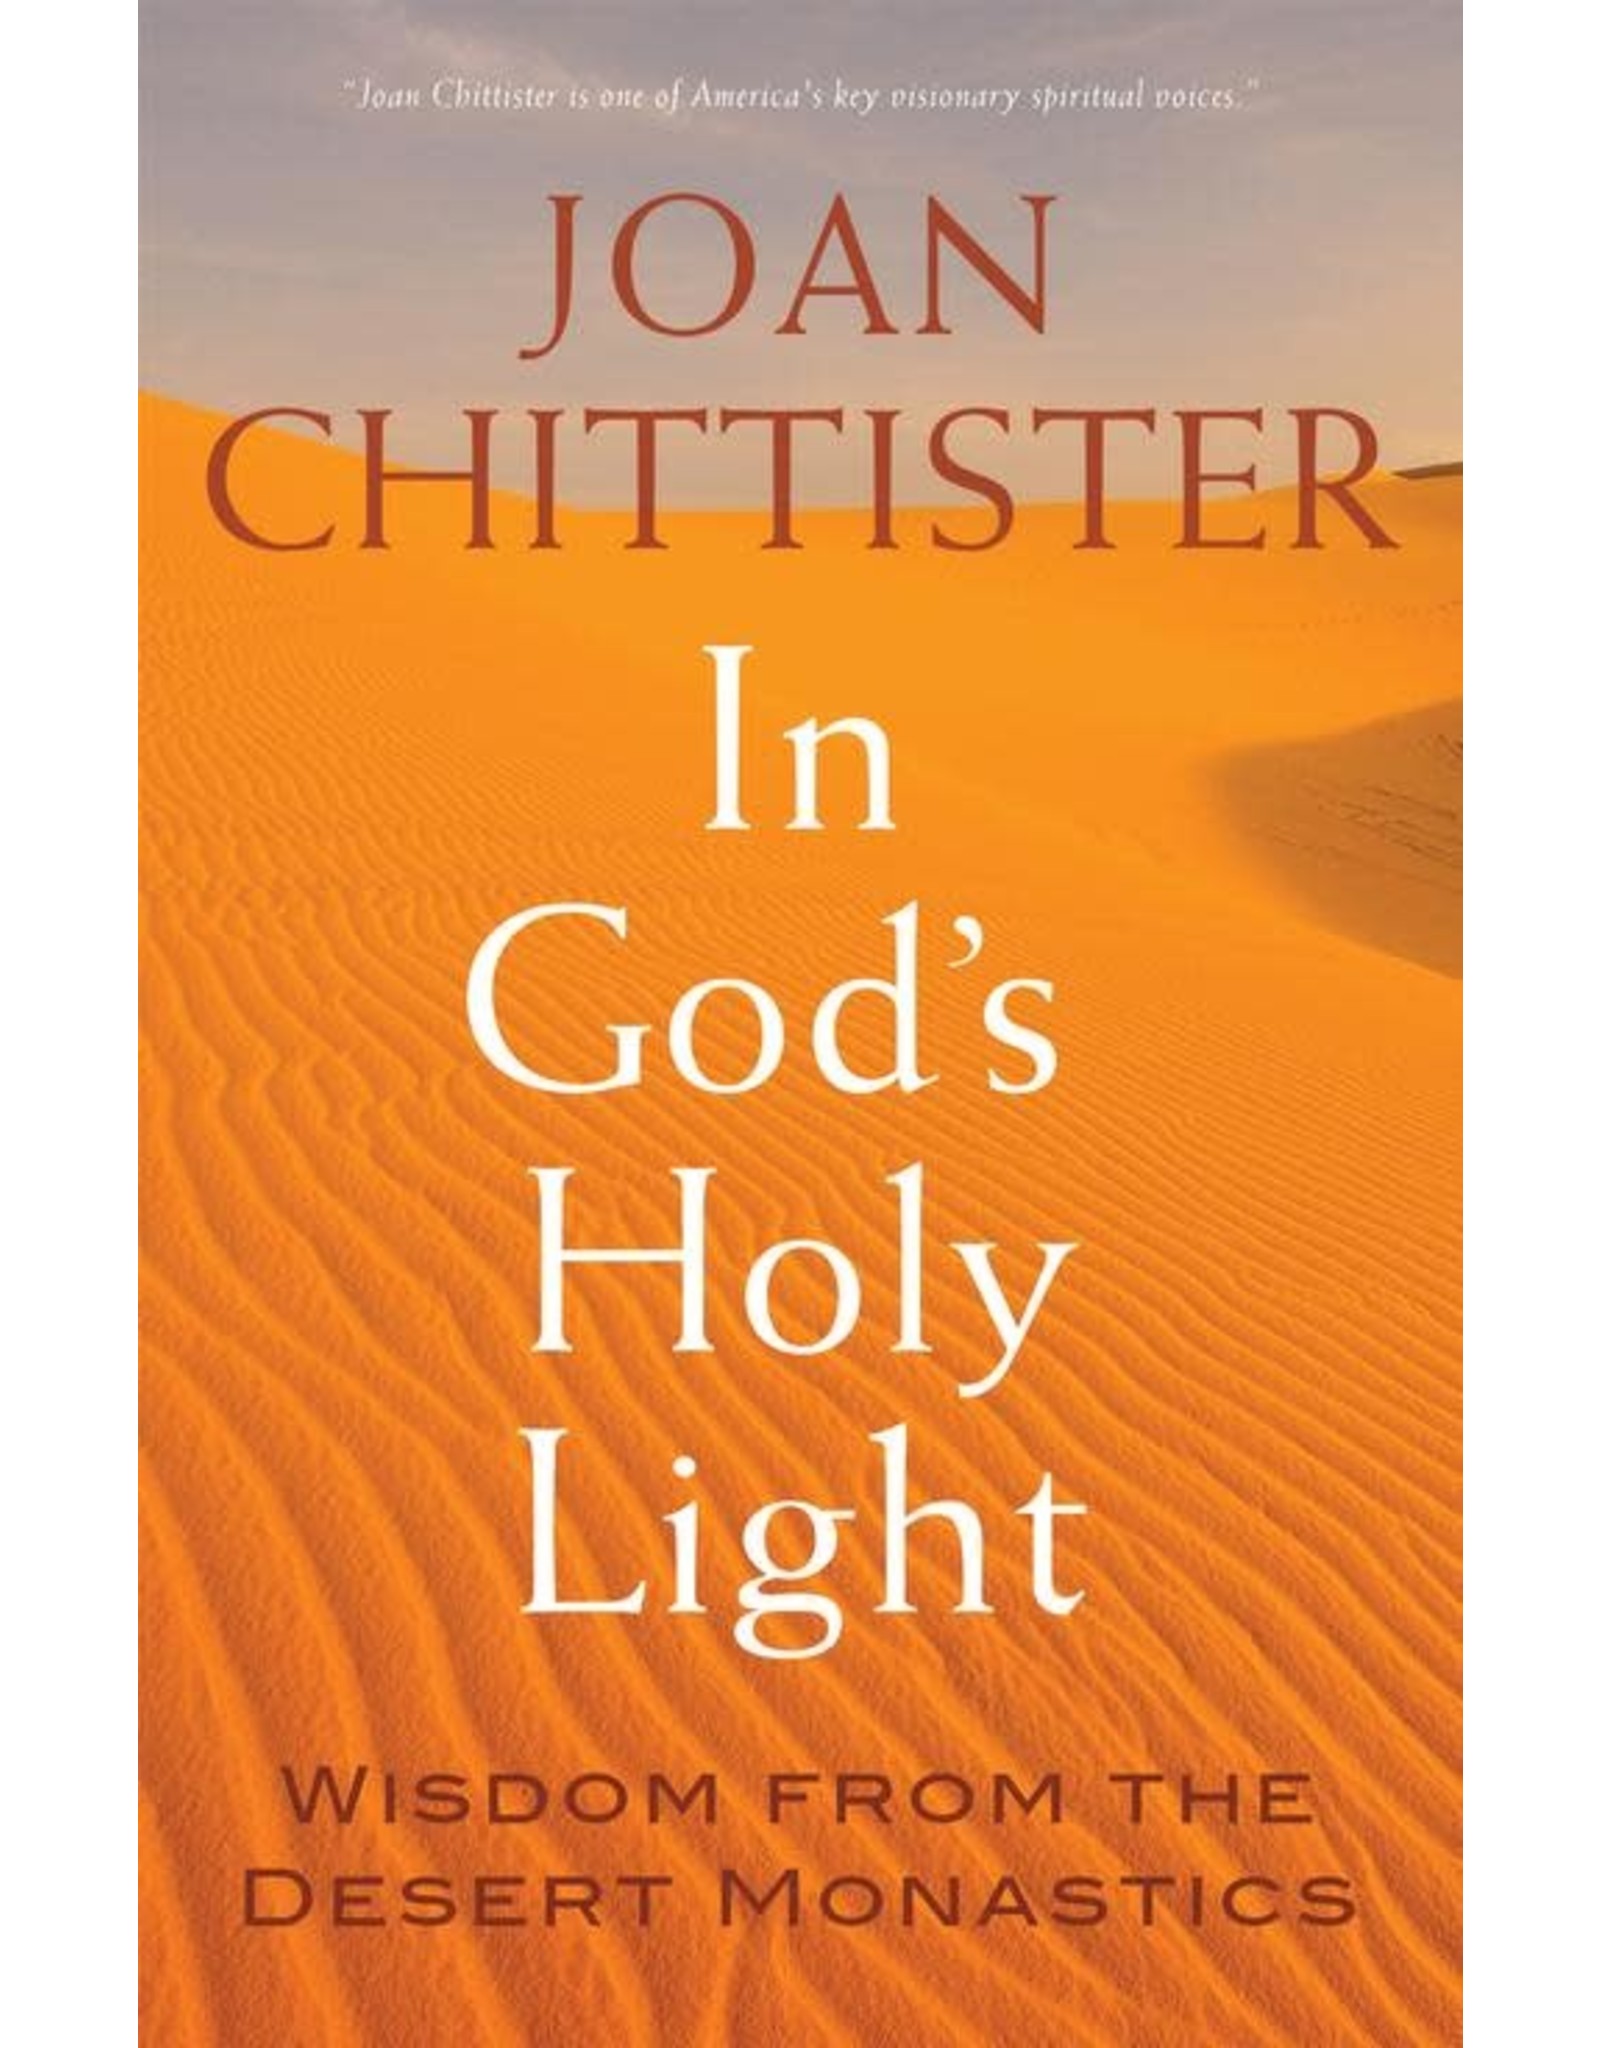 In God's Holy Light: Wisdom from the Desert Monastics